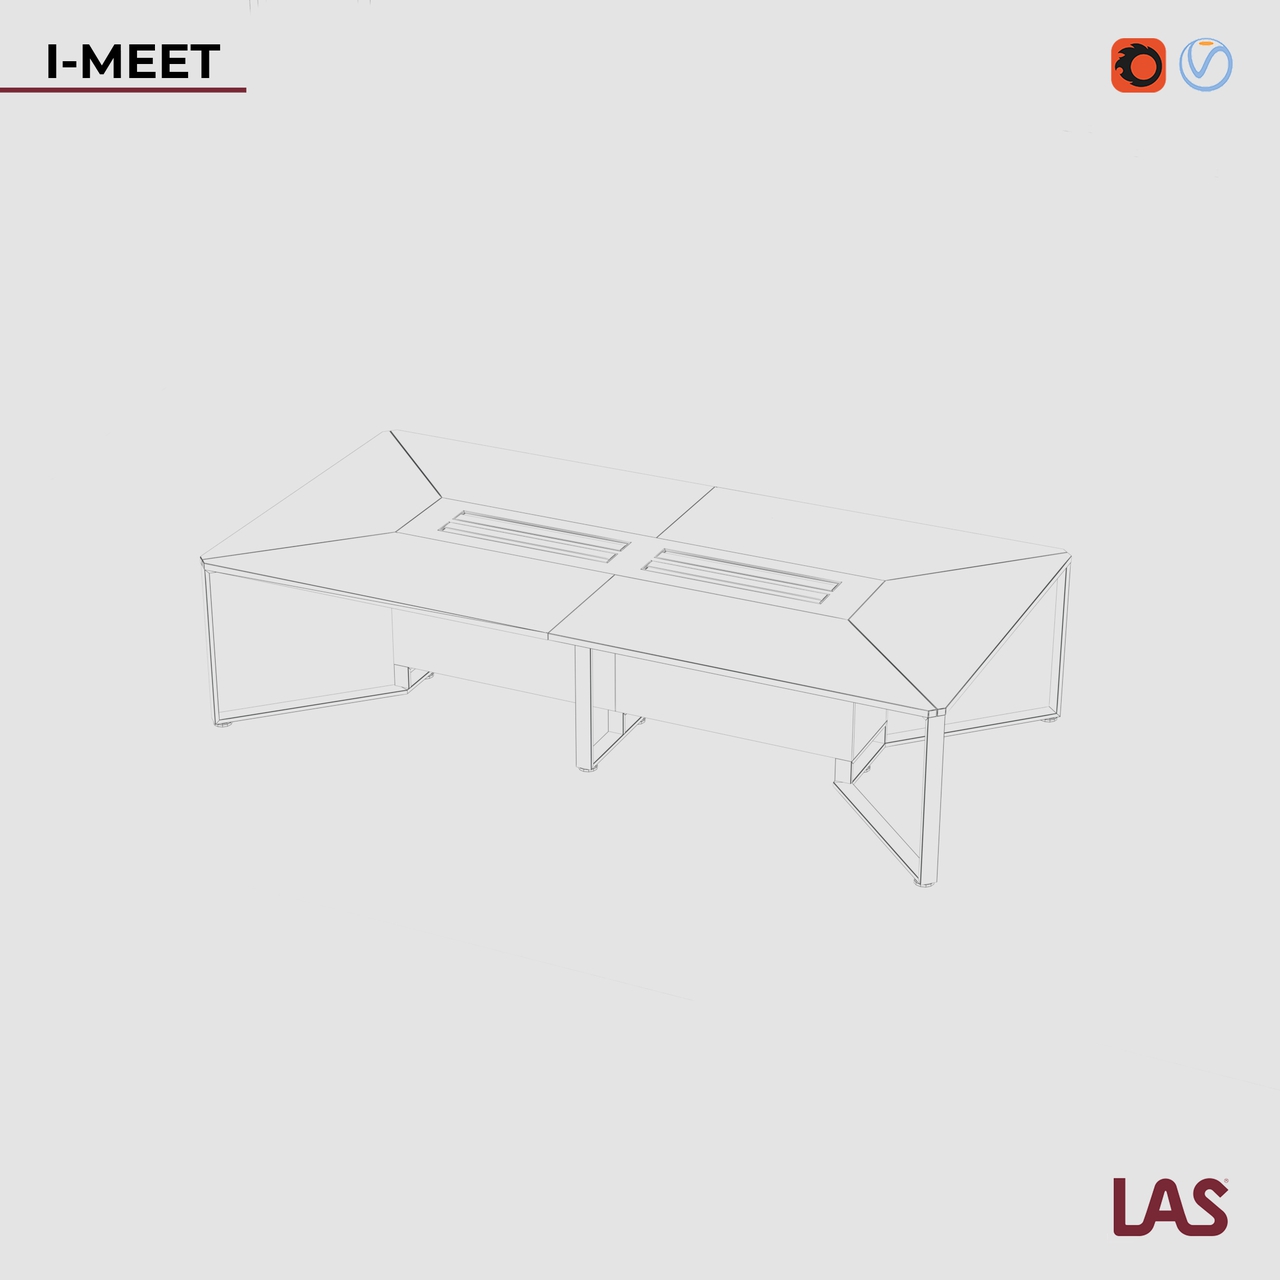 Превью G 3D-модели прямоугольного переговорного стола на 12 человек LAS I-Meet 146649